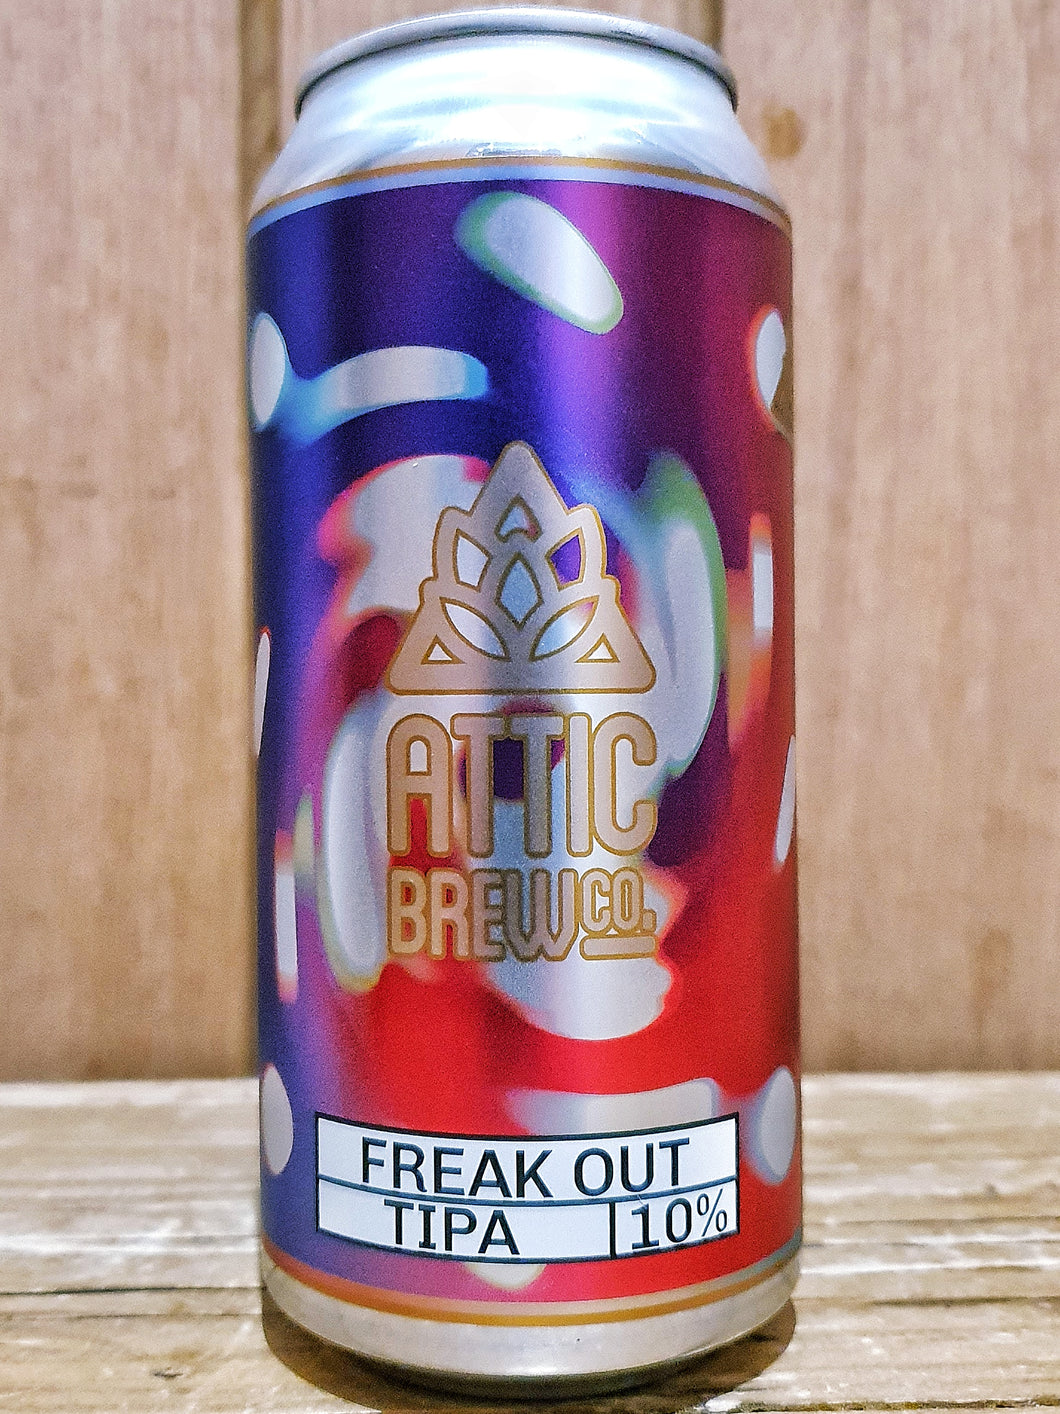 Attic Brew Co - Freak Out